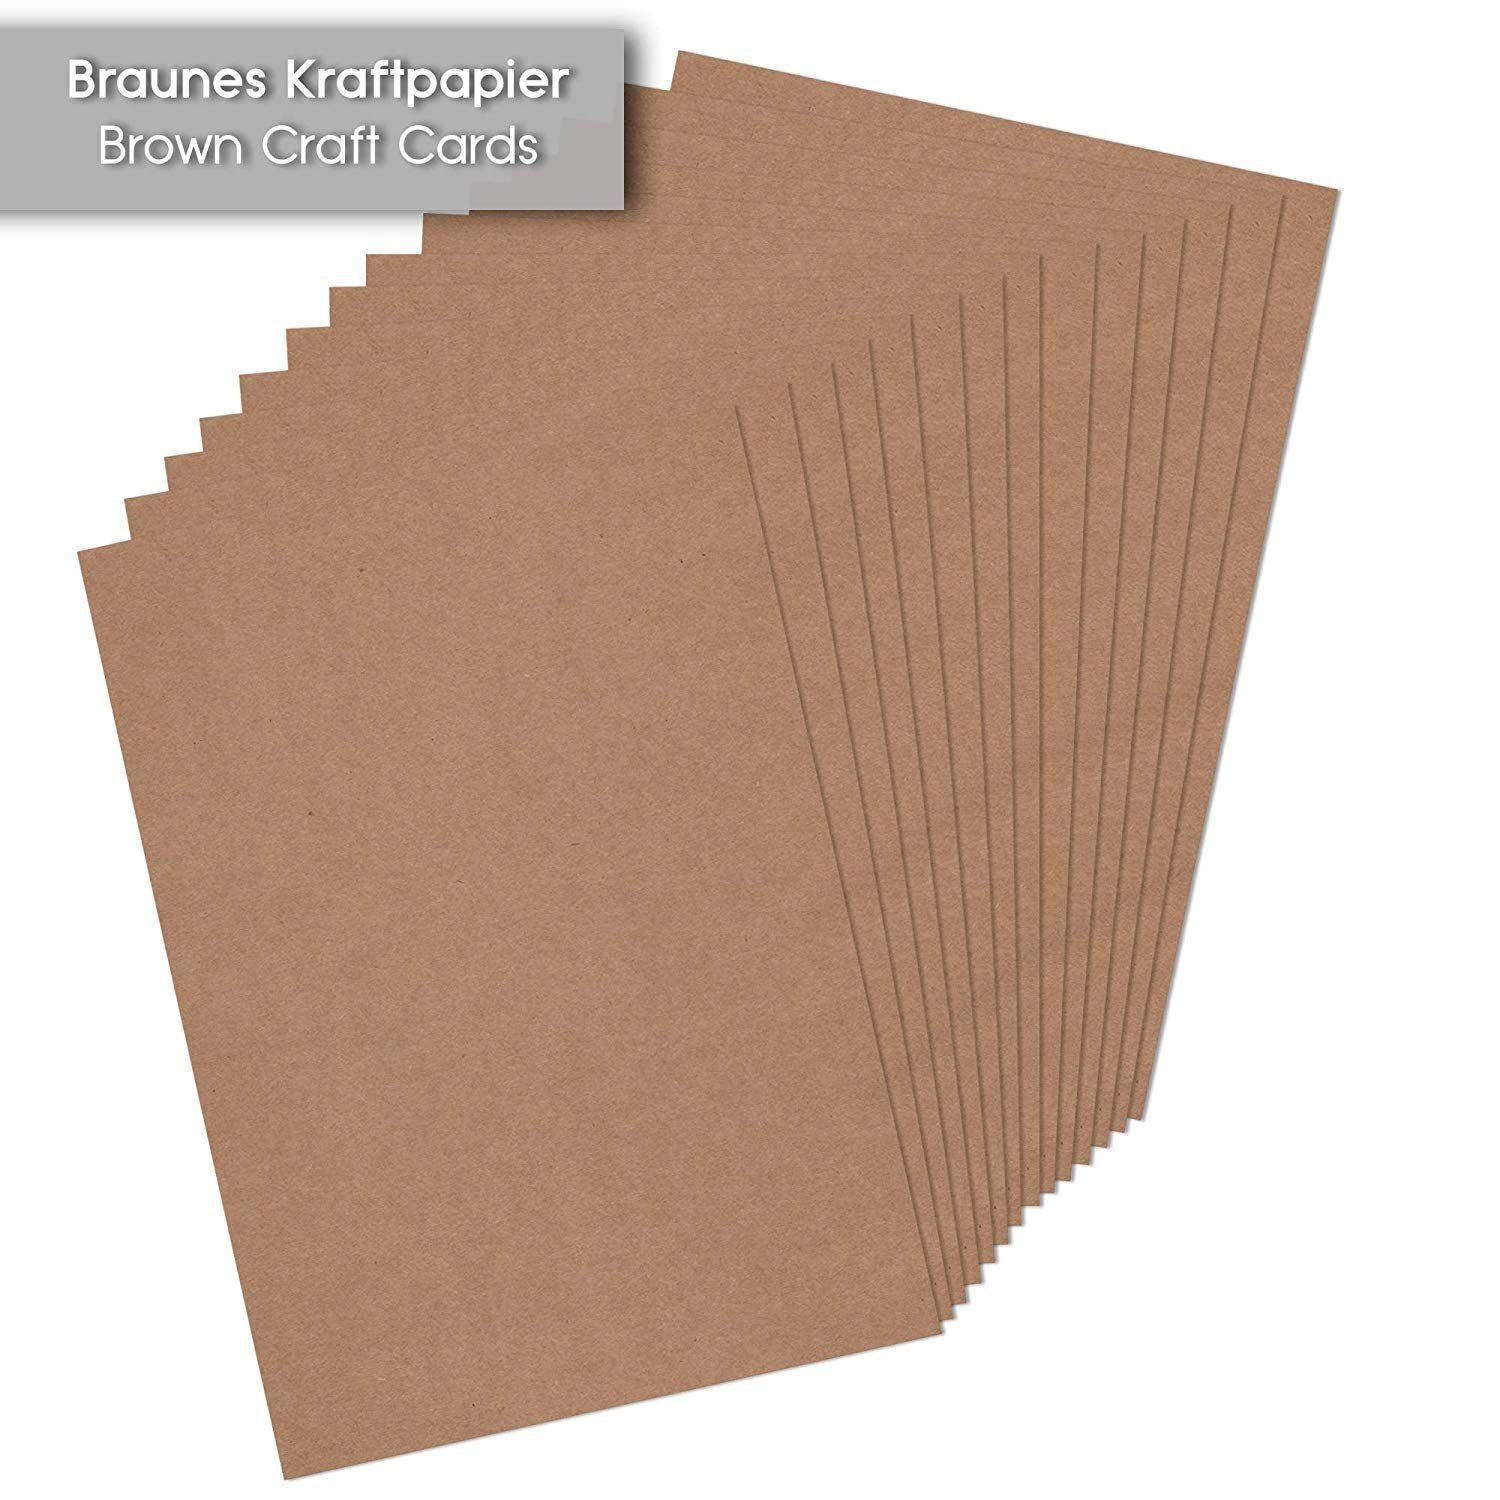 Tritart Aquarellpapier Kraftpapier zum A4 Bedrucken 55 55 Blatt Karton 170g/m² Kraftpapier Natur A4 Druckpapier 170g/m² Natur Karton Blatt